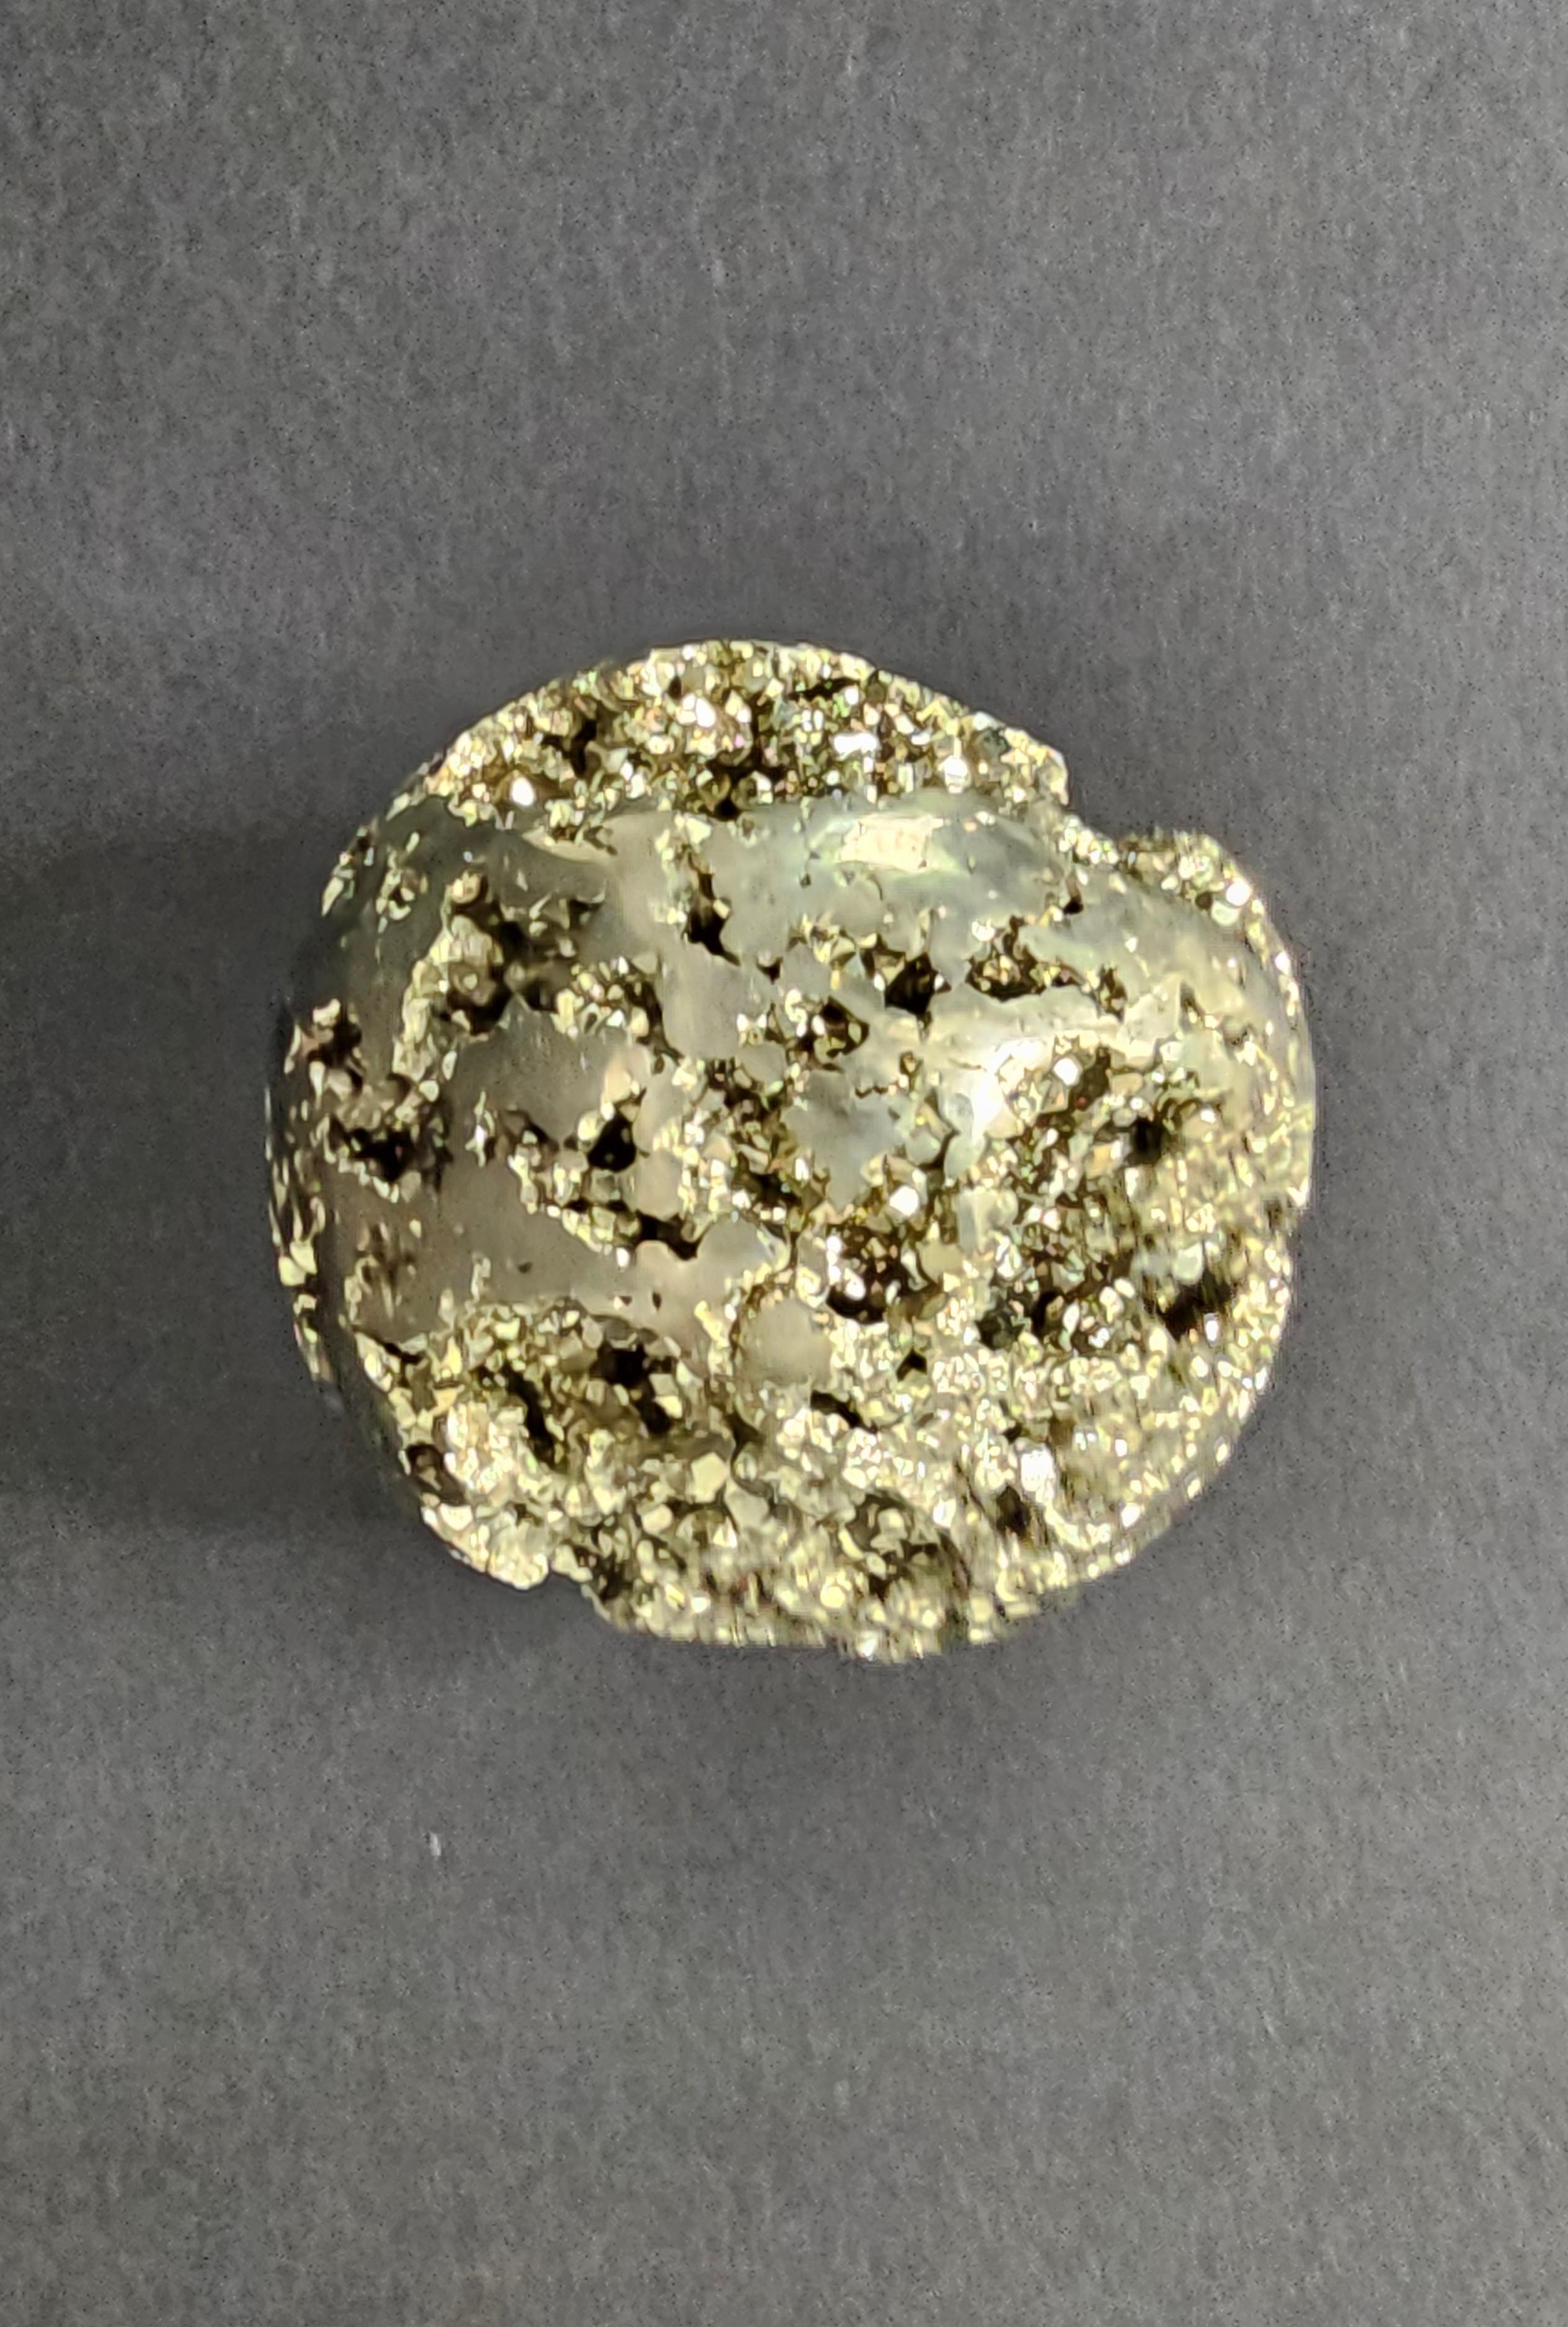 Peruvian Pyrite Fool's Gold Sphere Peru Natural Specimen 